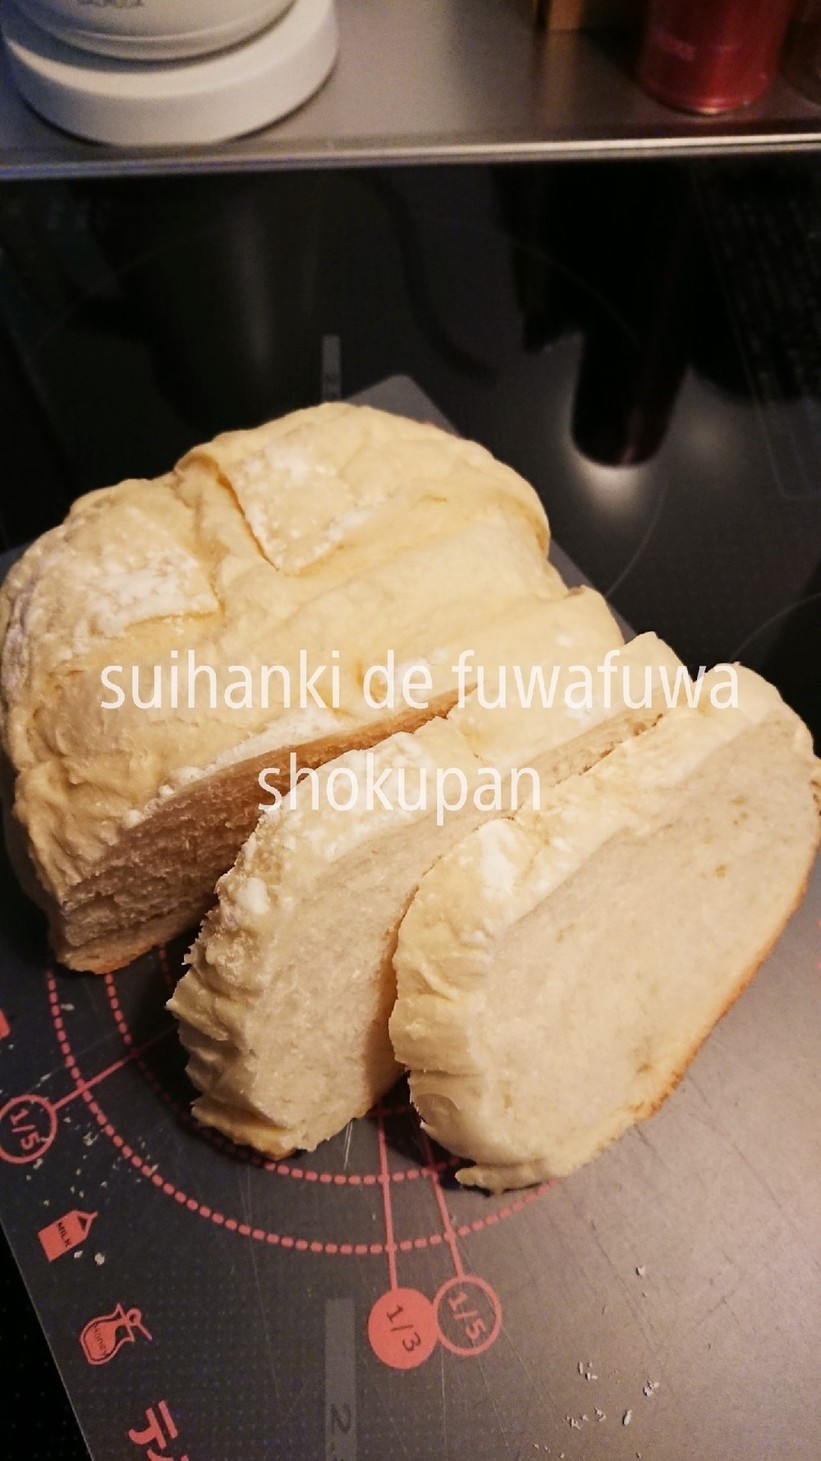 パン焼き機能付きの炊飯器でふわふわ食パンの画像